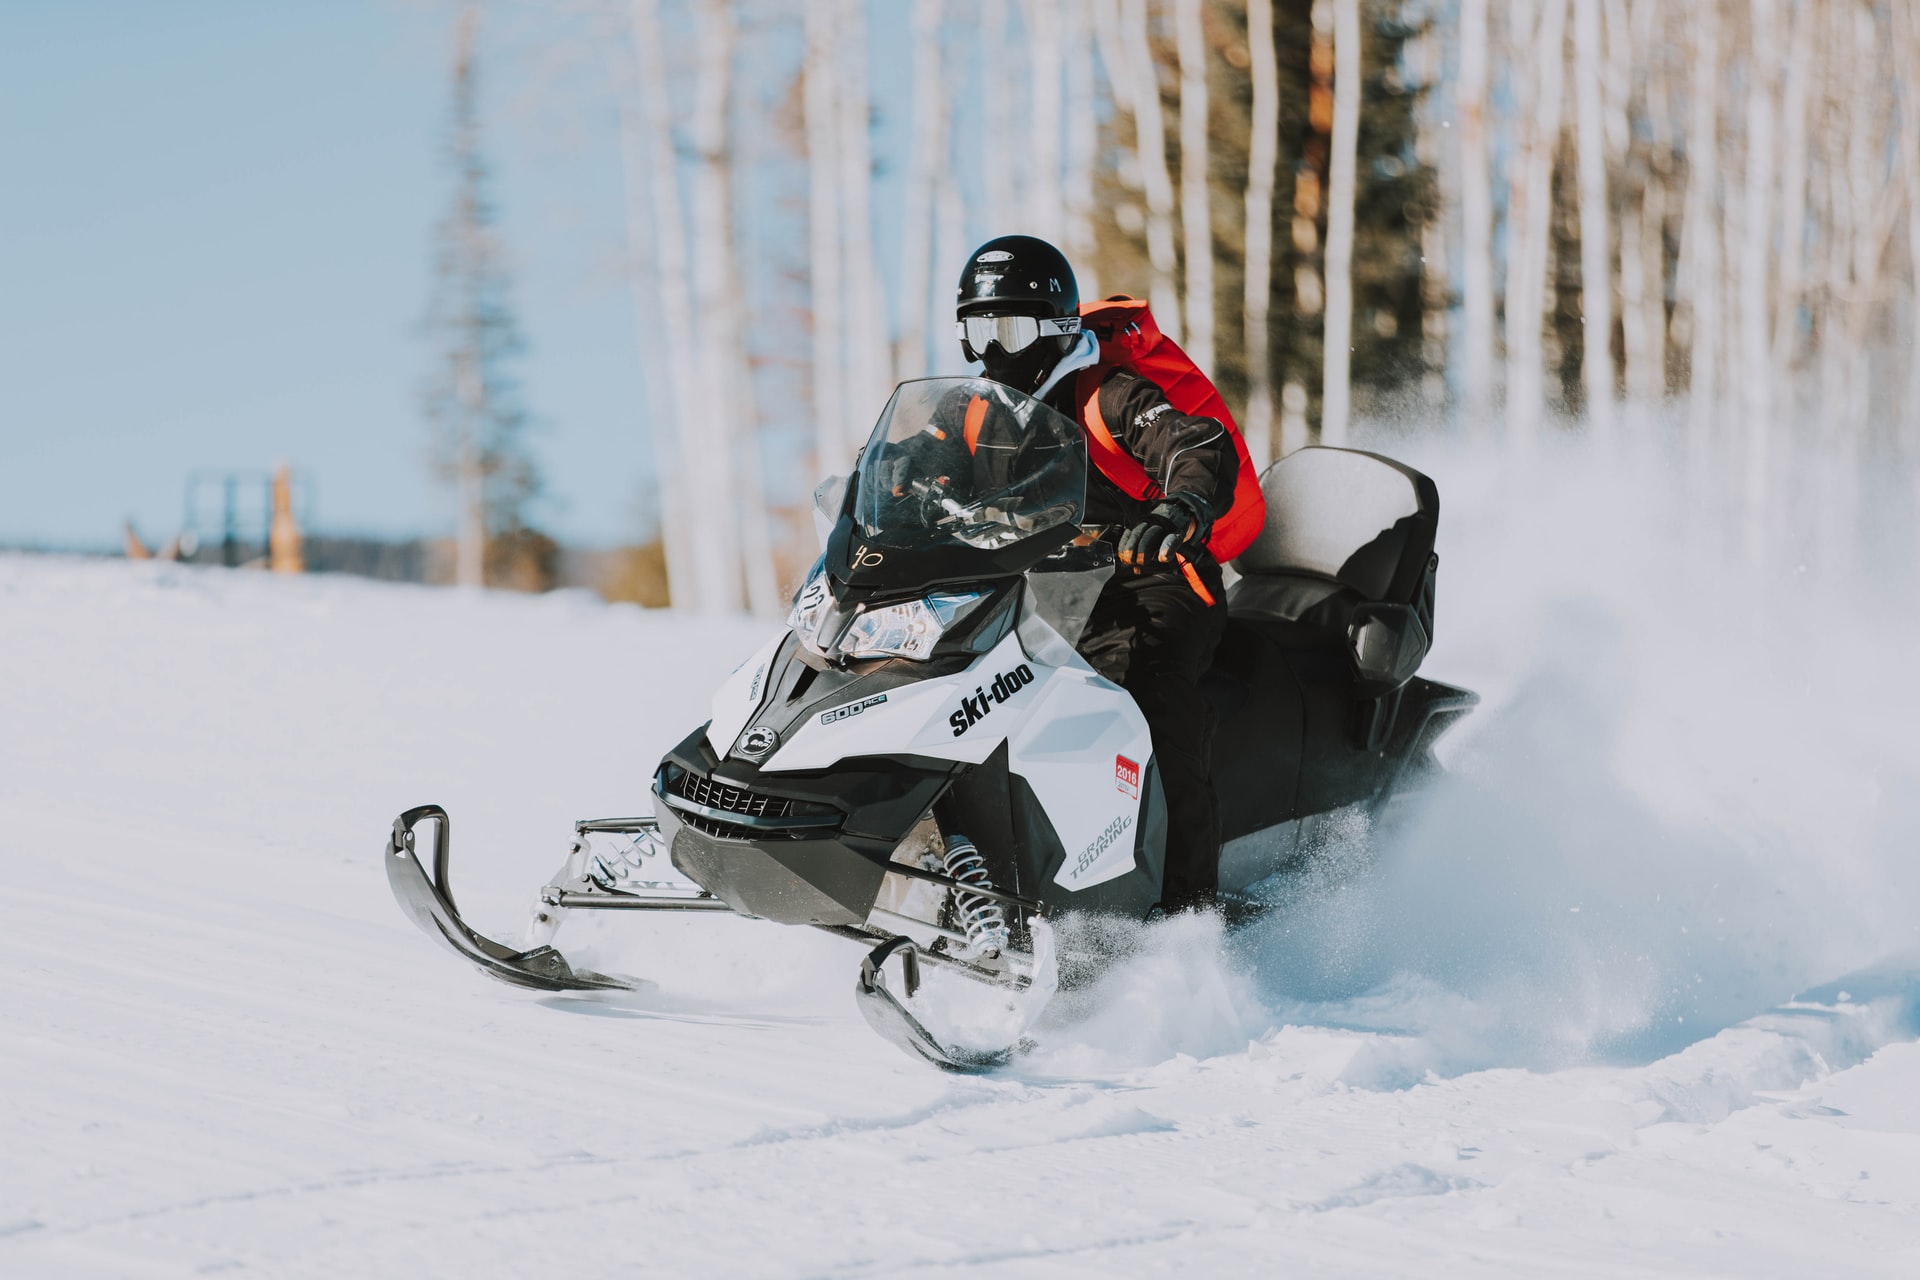 How Fast Do Snowmobiles Go?